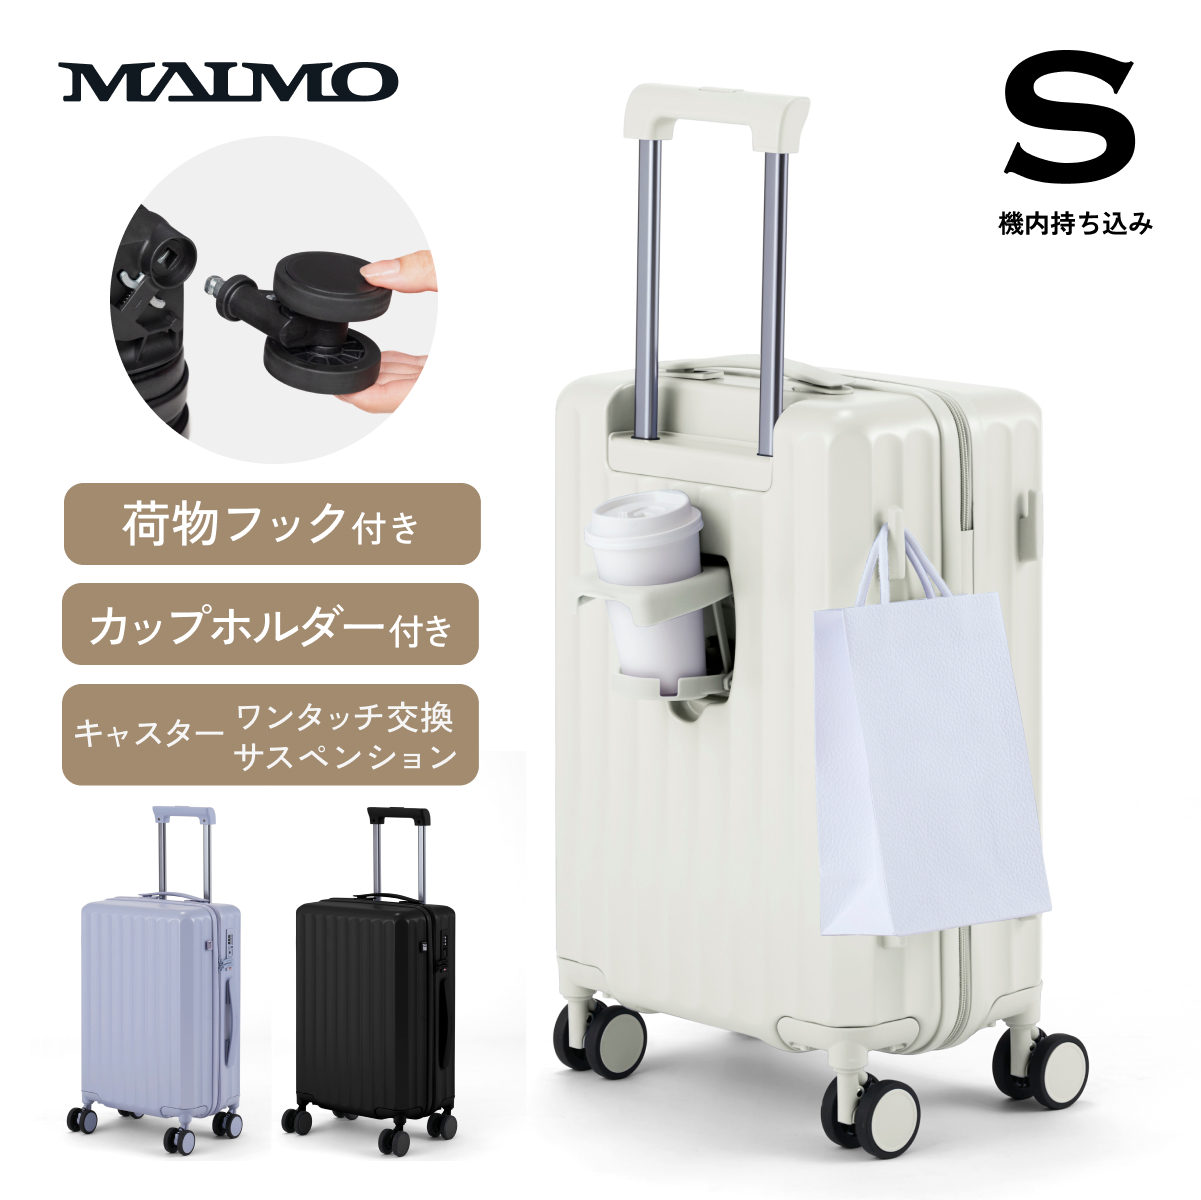 【送料無料】 MAIMO スーツケース カップホルダー フック付き サスペンション 日本企業 キャリ...